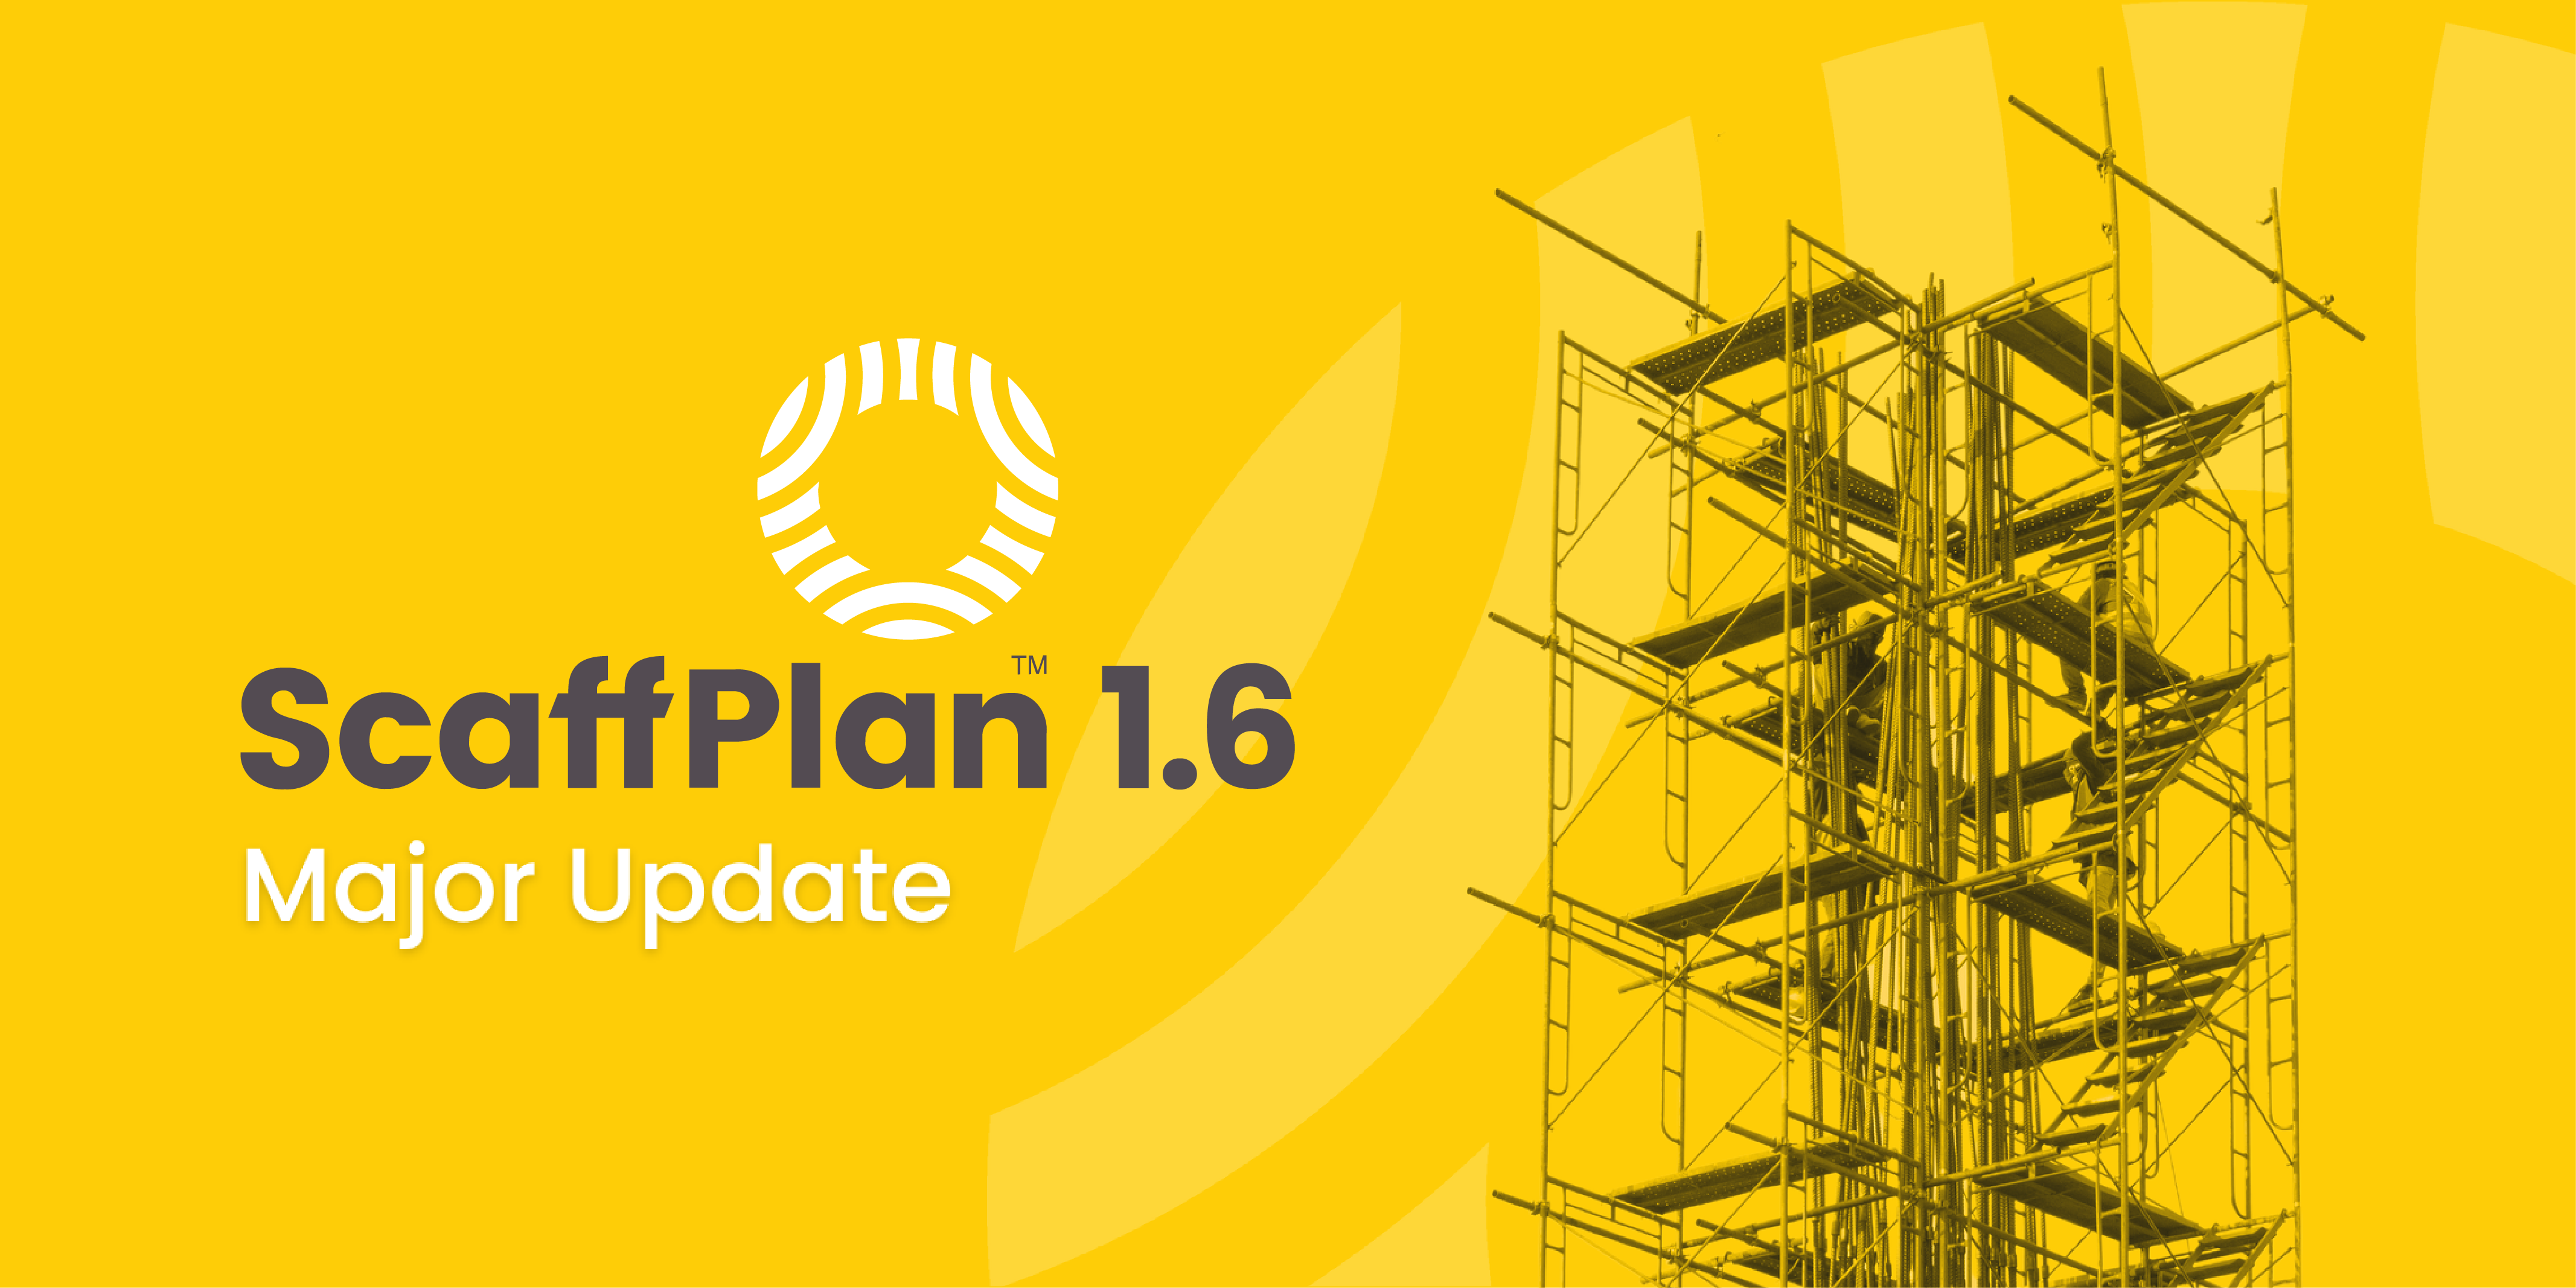 ScaffPlan 1.6 Major Update